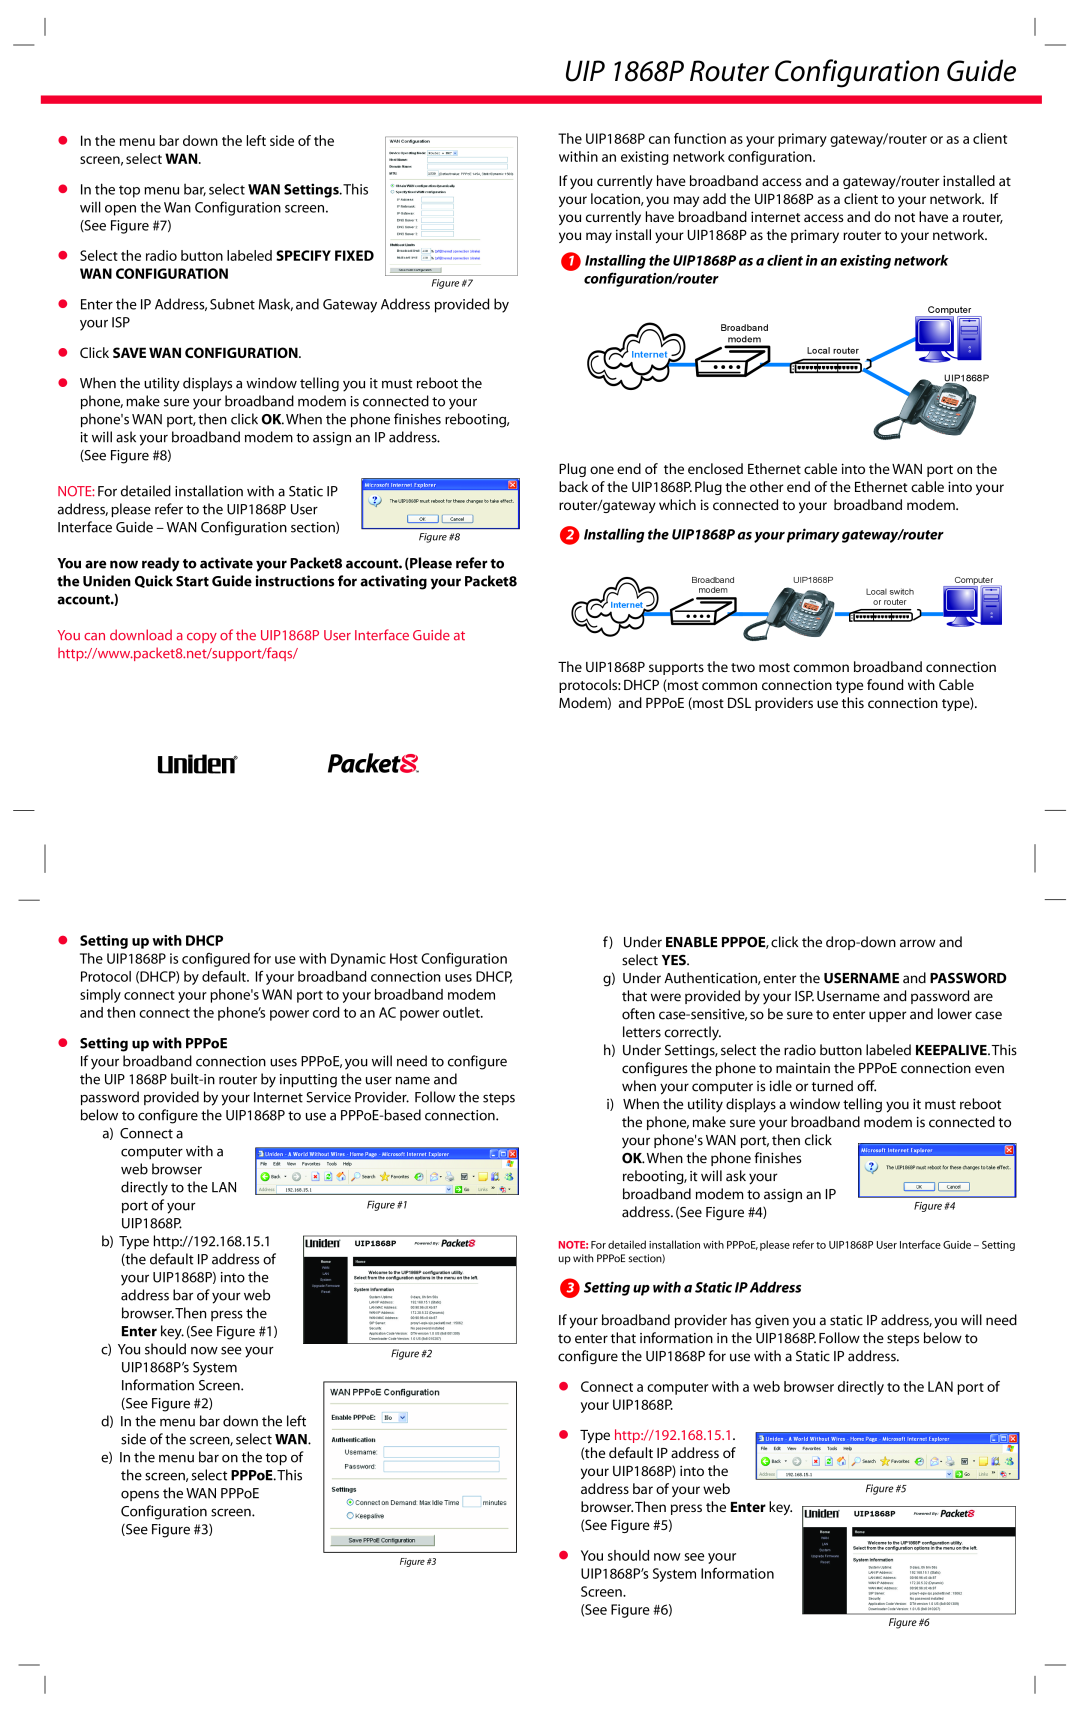 Uniden quick start UIP 1868P Router Configuration Guide, Wan Configuration,  Click SAVE WAN CONFIGURATION 